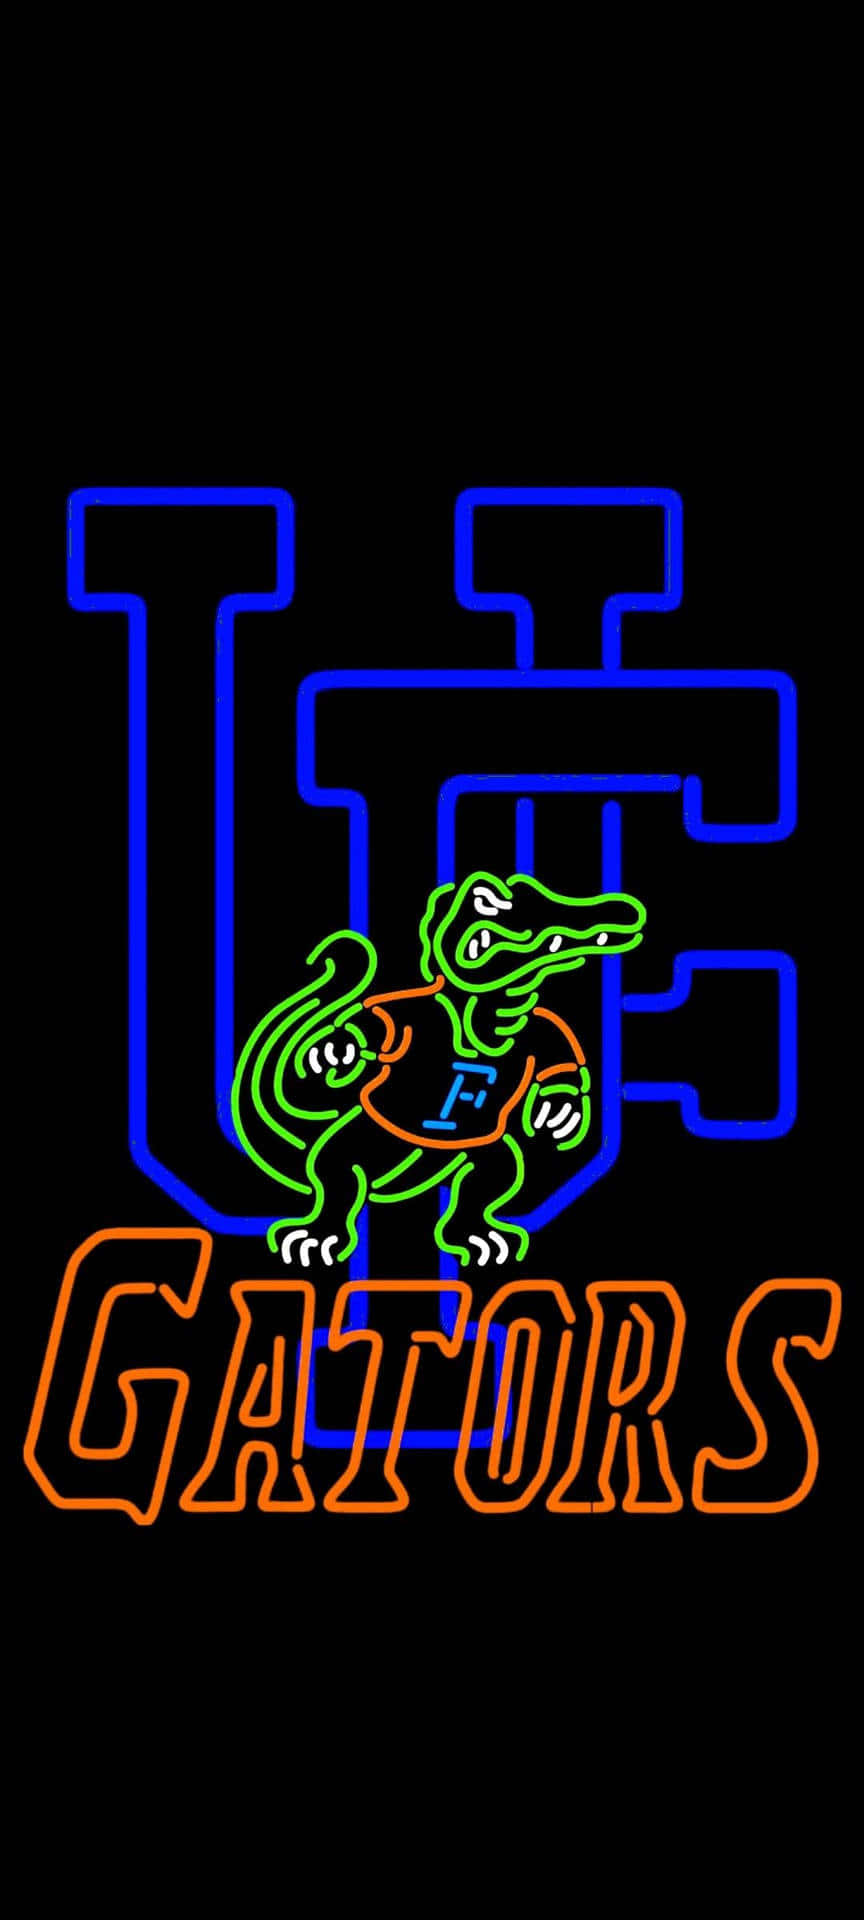 Den officielle logo af Florida Gators. Wallpaper